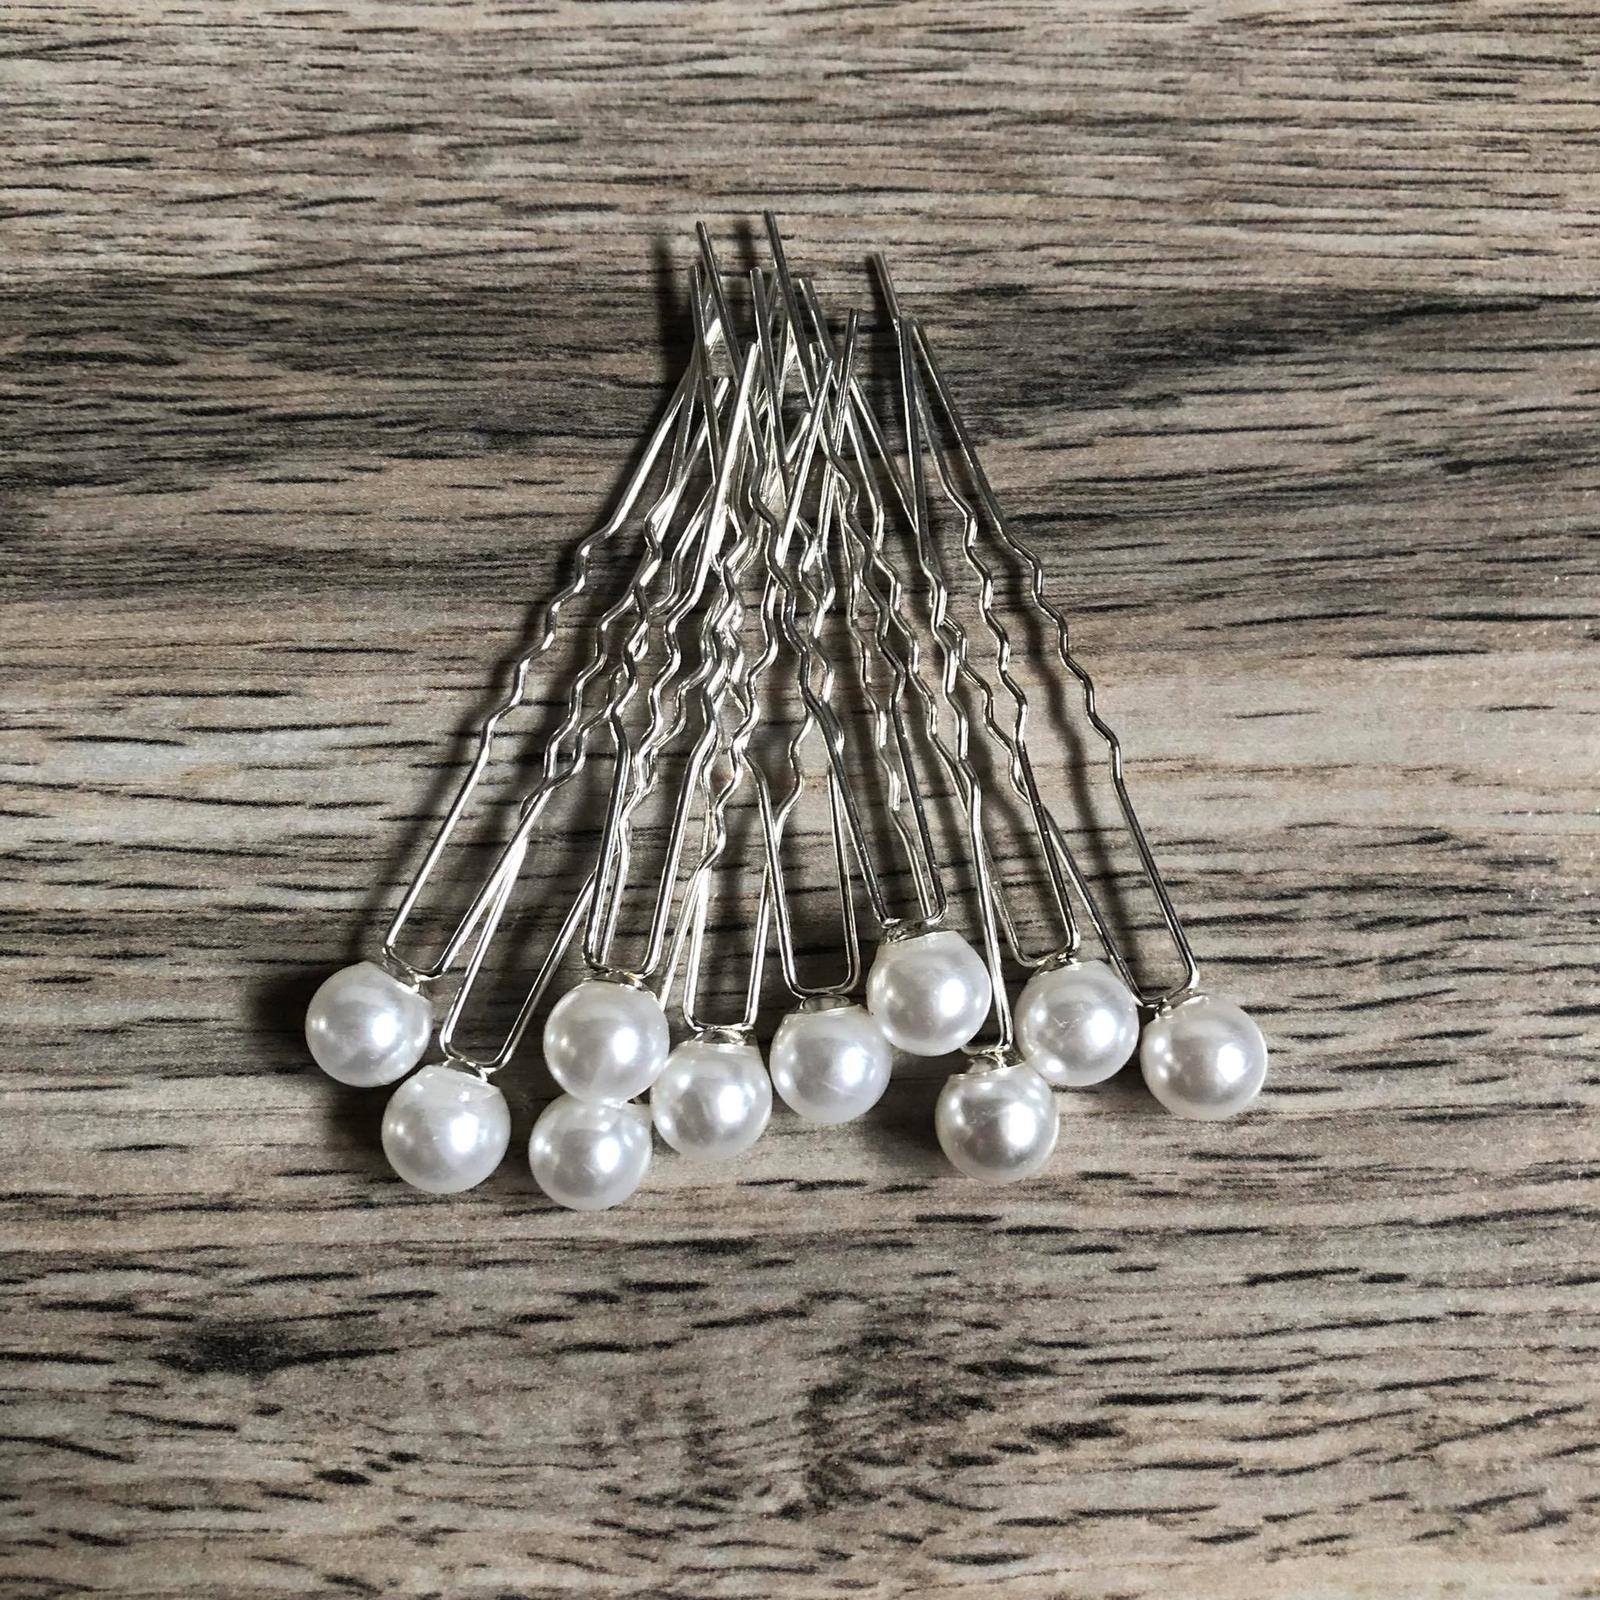 🌸Bílé perly do vlasů (0,8 cm) - 10 ks🌸 - Obrázek č. 1